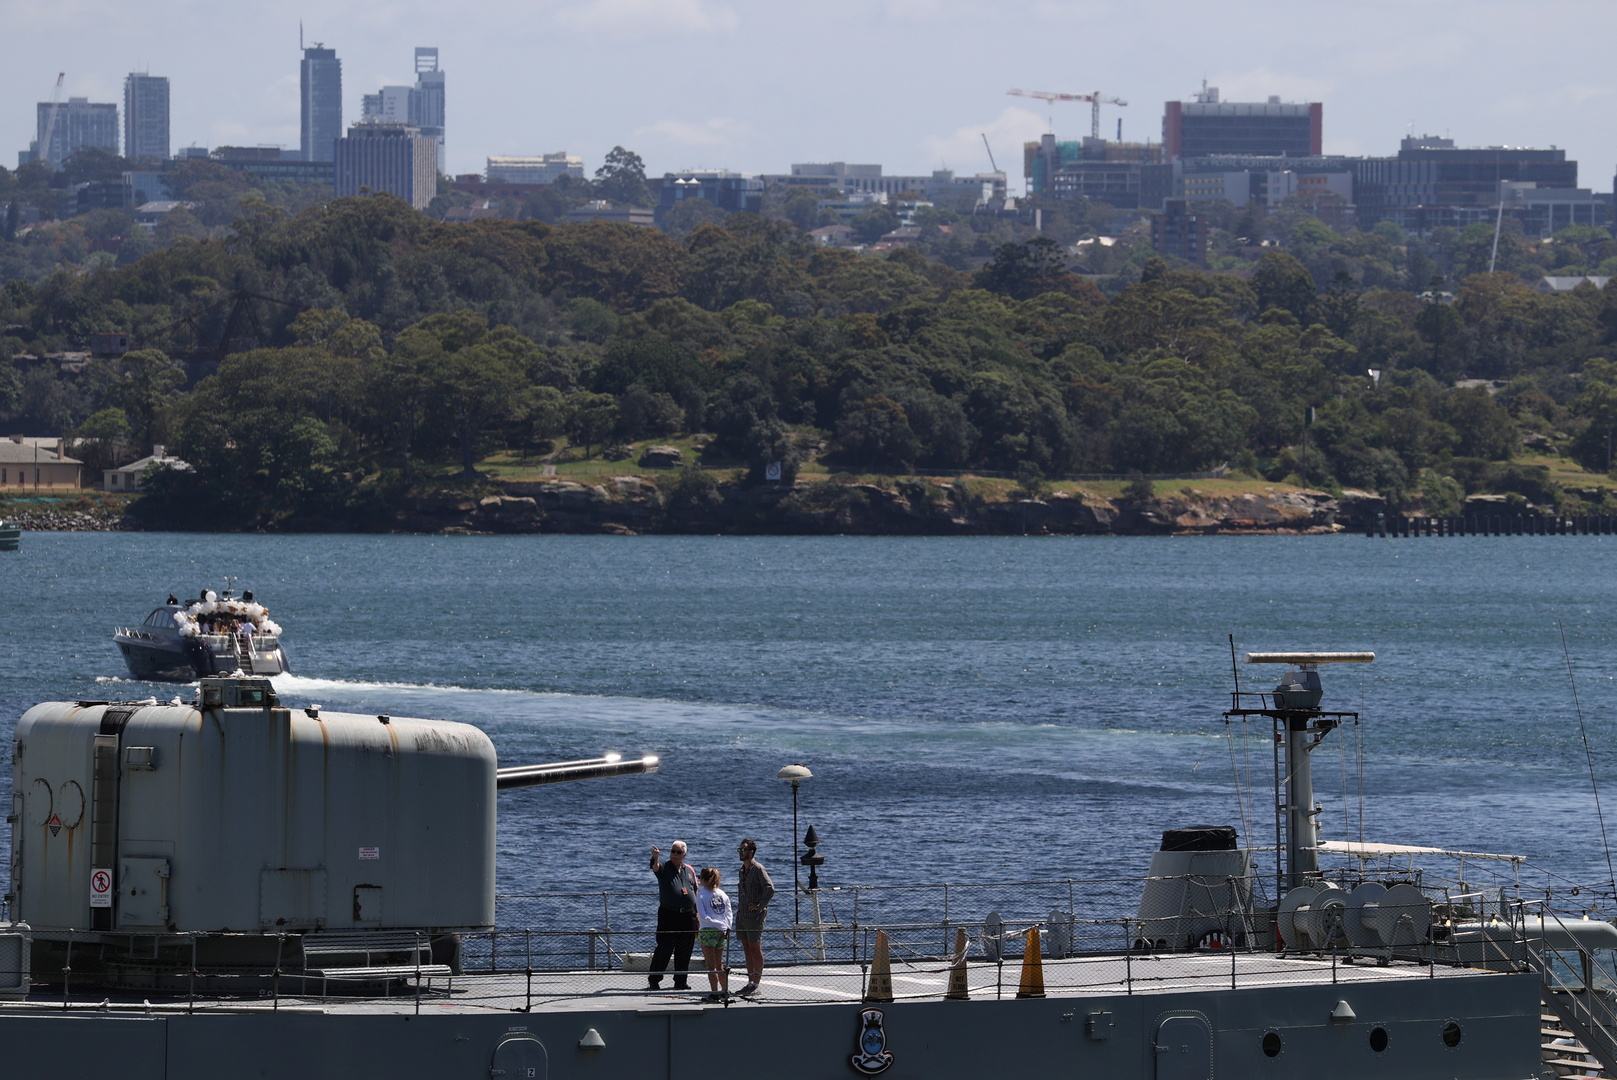 أستراليا تنفق 700 مليون دولار لتطوير أسلحة جديدة للقوات البحرية